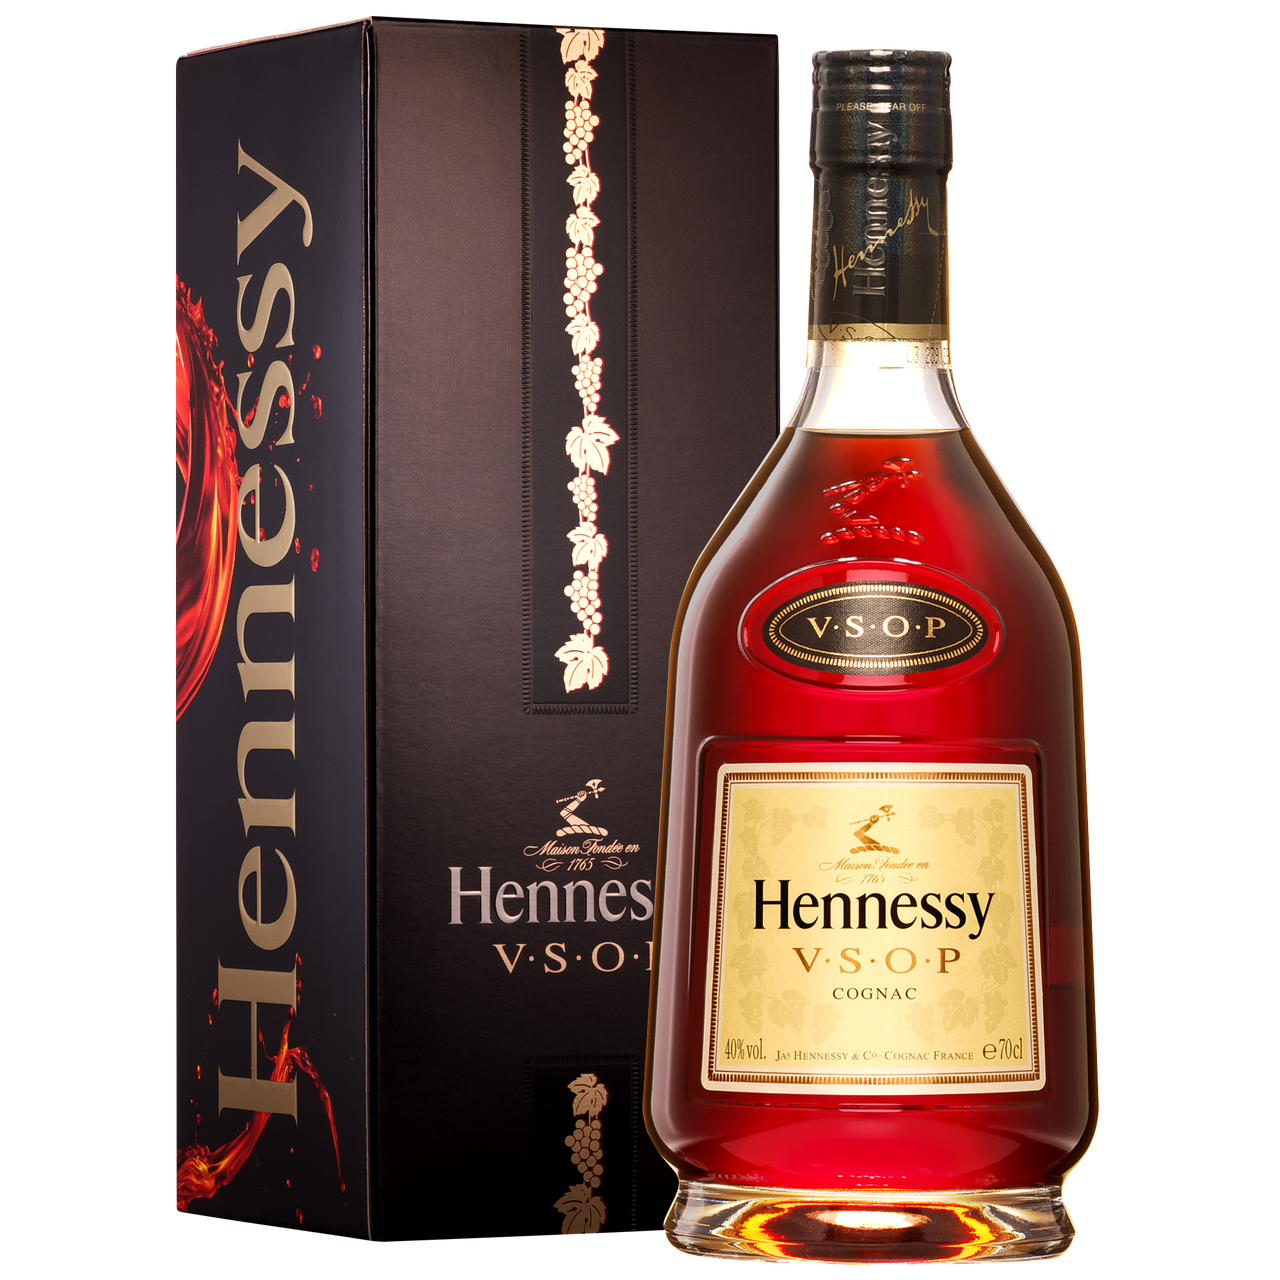 Hennessy Vsop 700ml